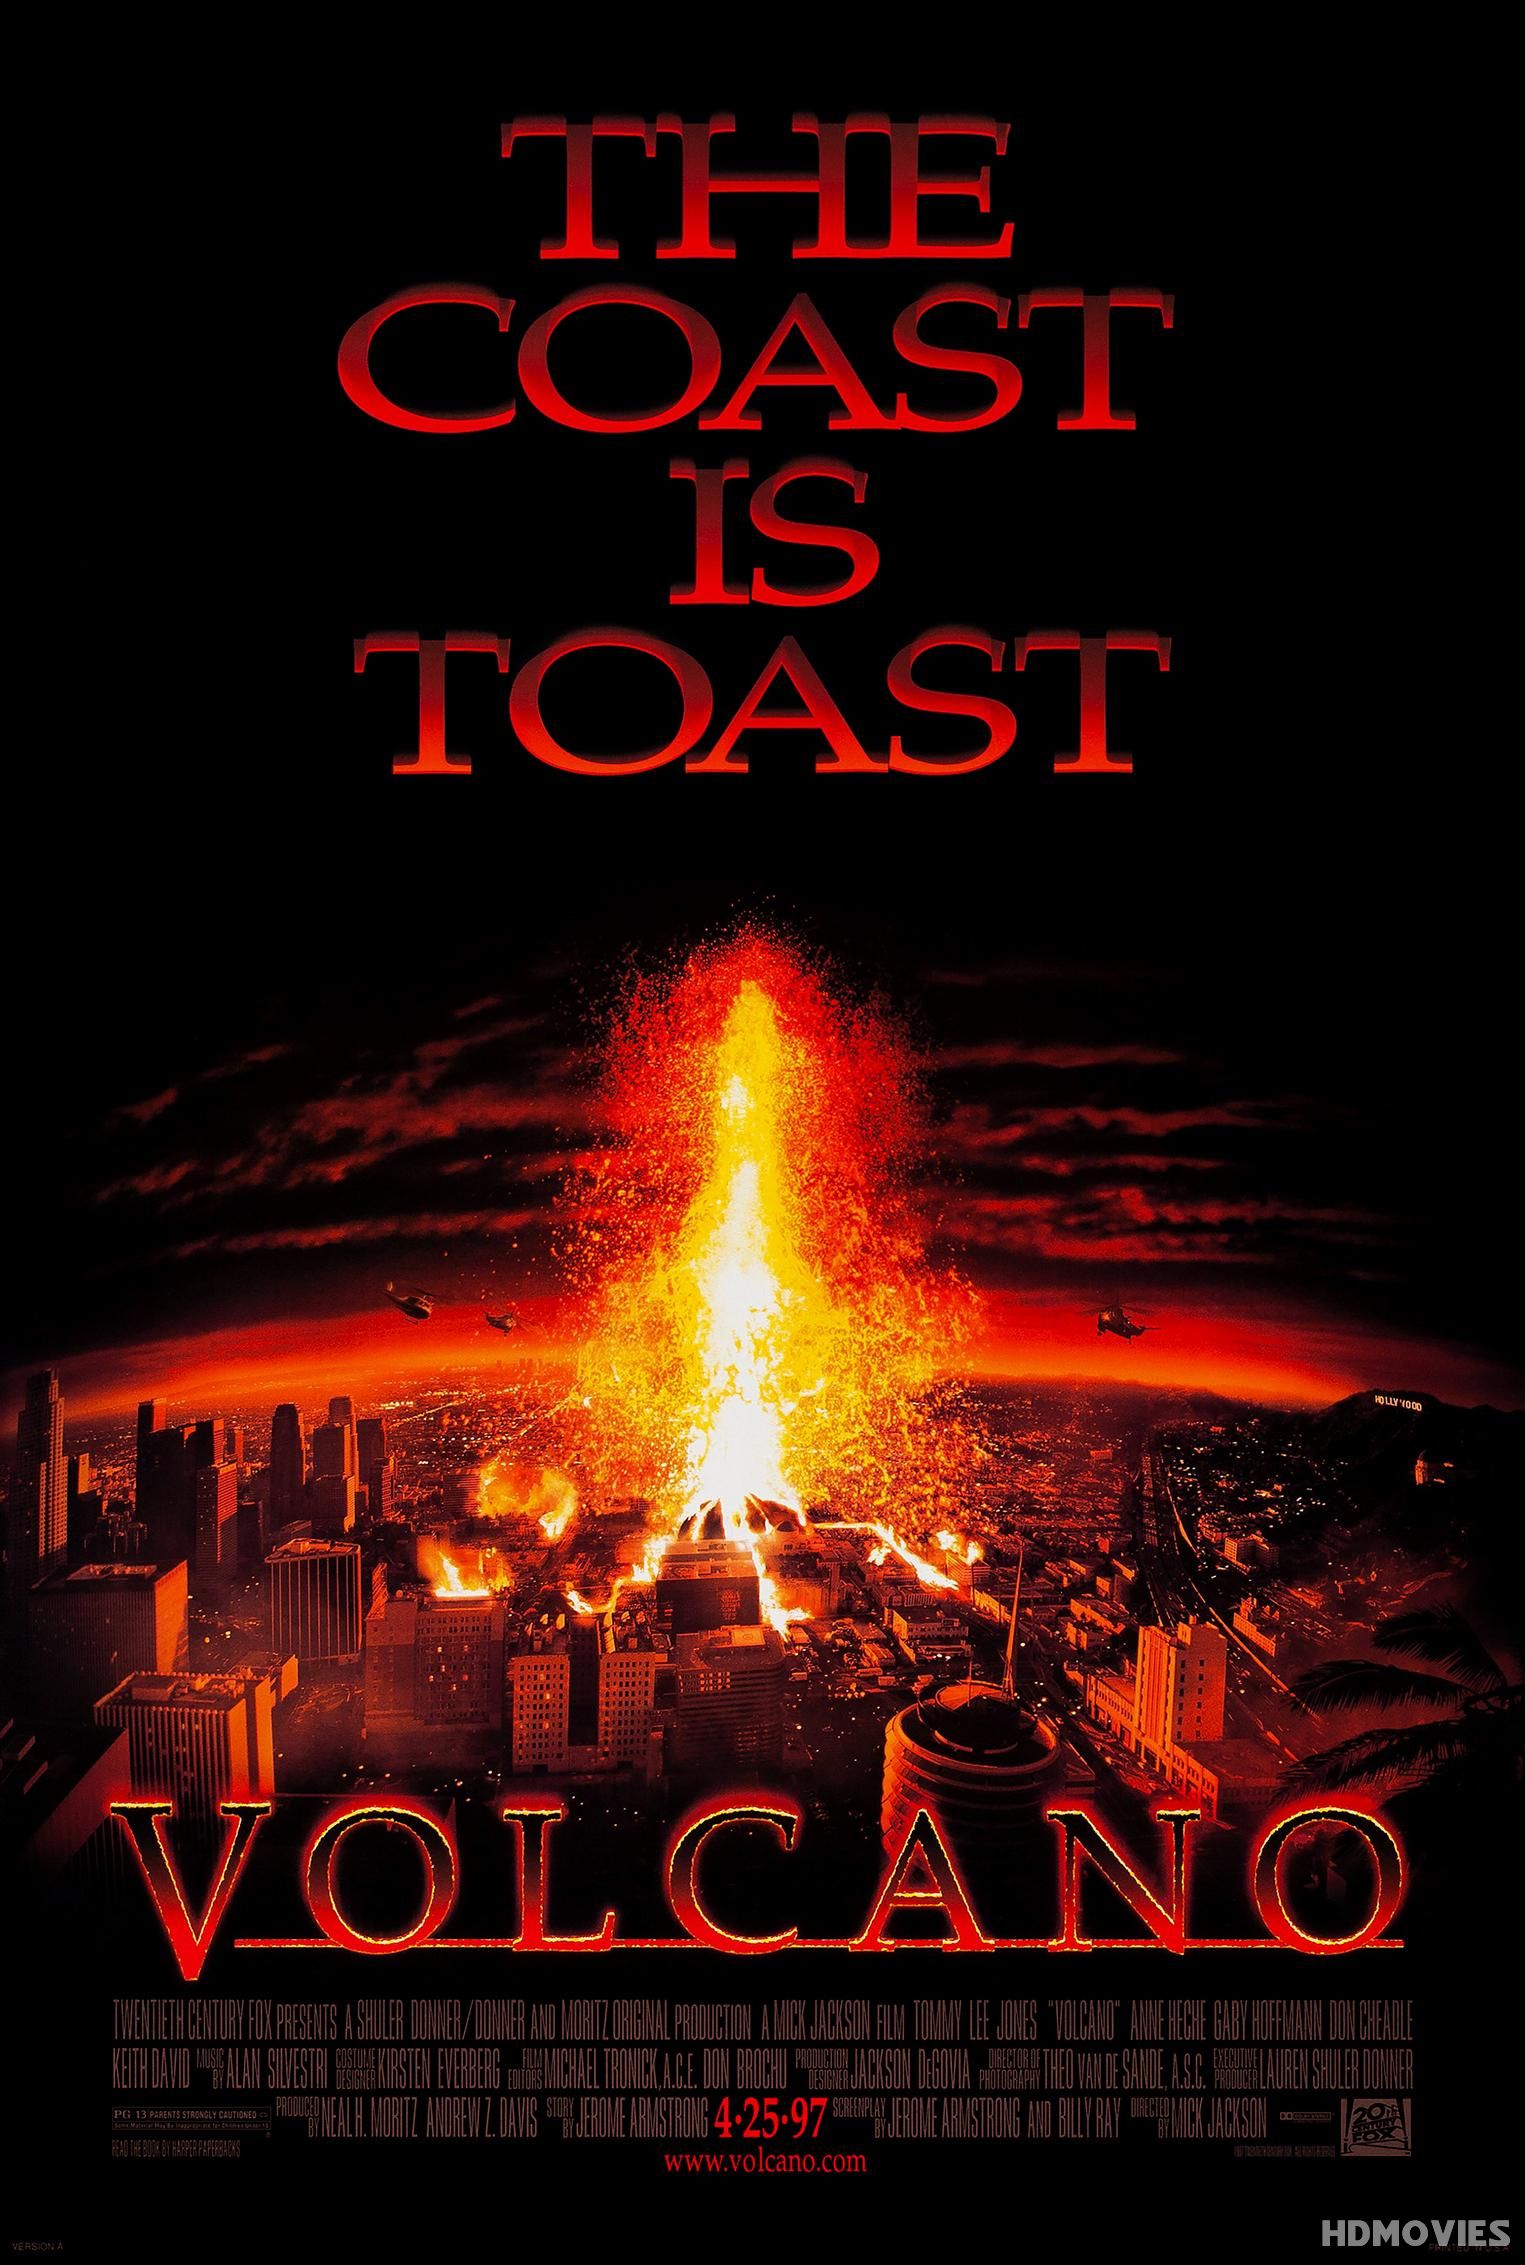 Volcano (1997) Hindi Dubbed